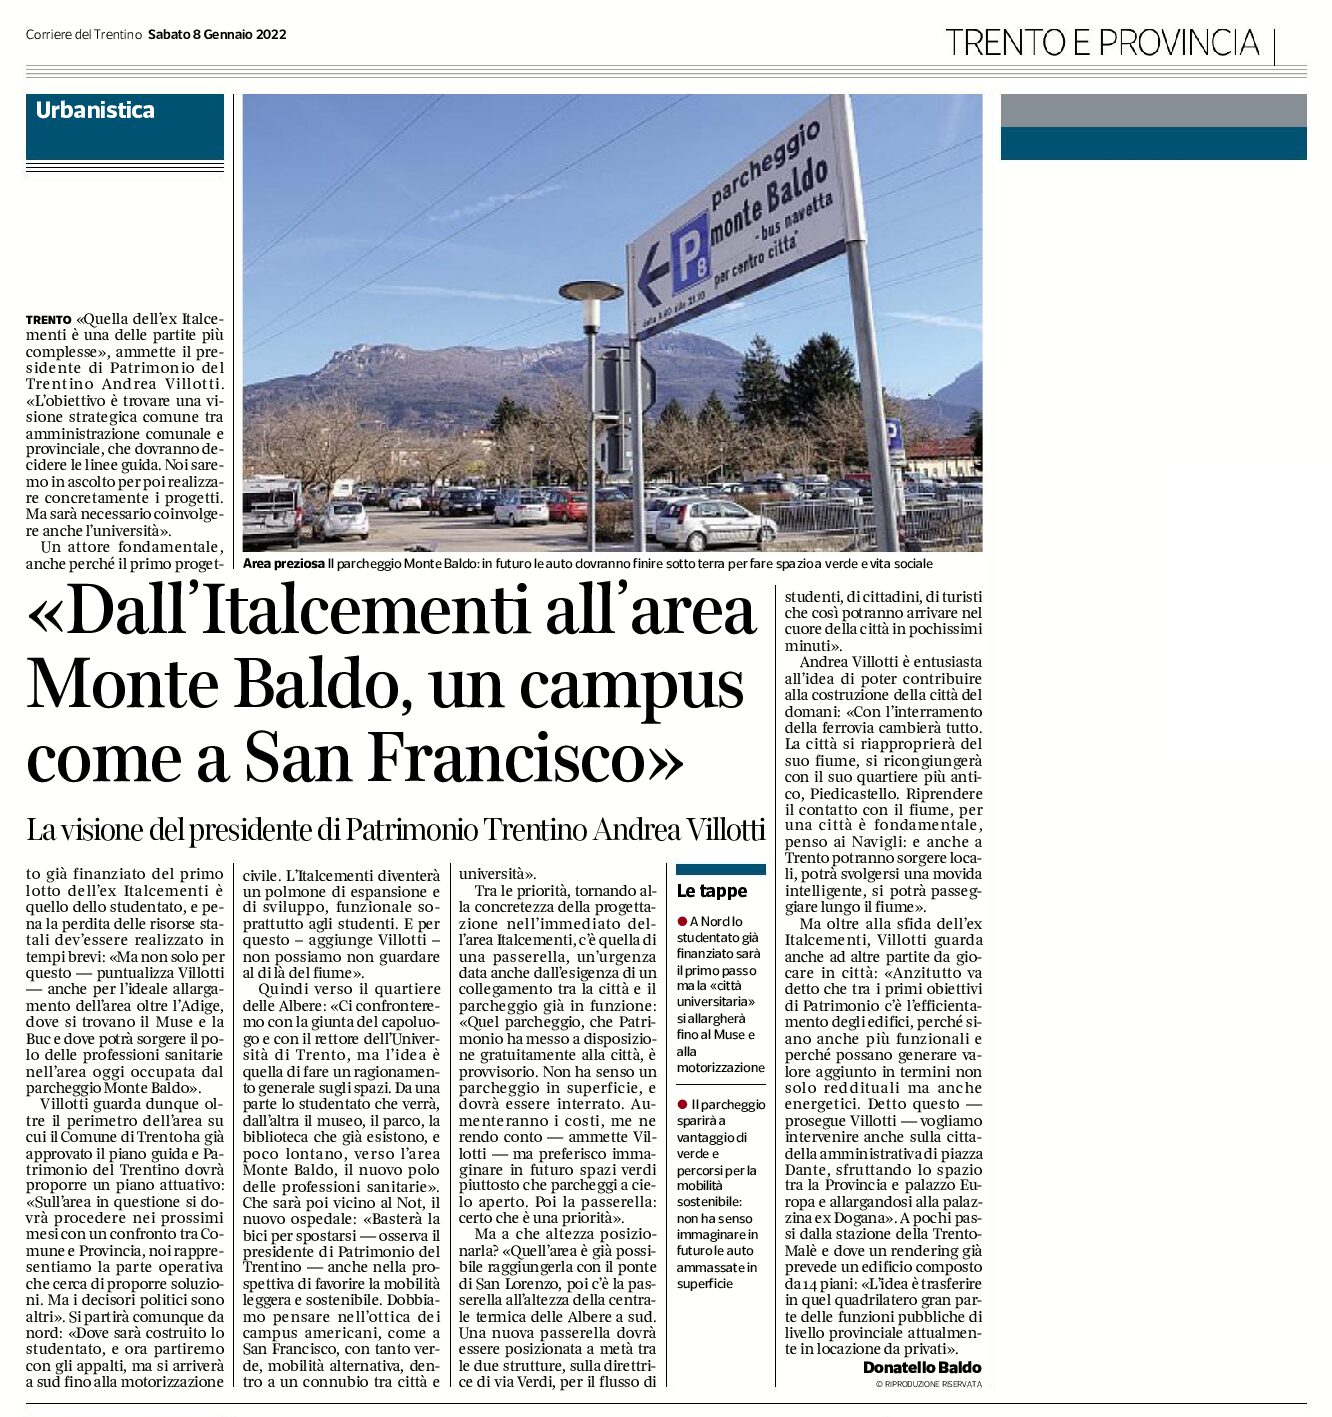 Trento: dall’Italcementi all’area Monte Baldo, un campus come a San Francisco. Intervista a Villotti